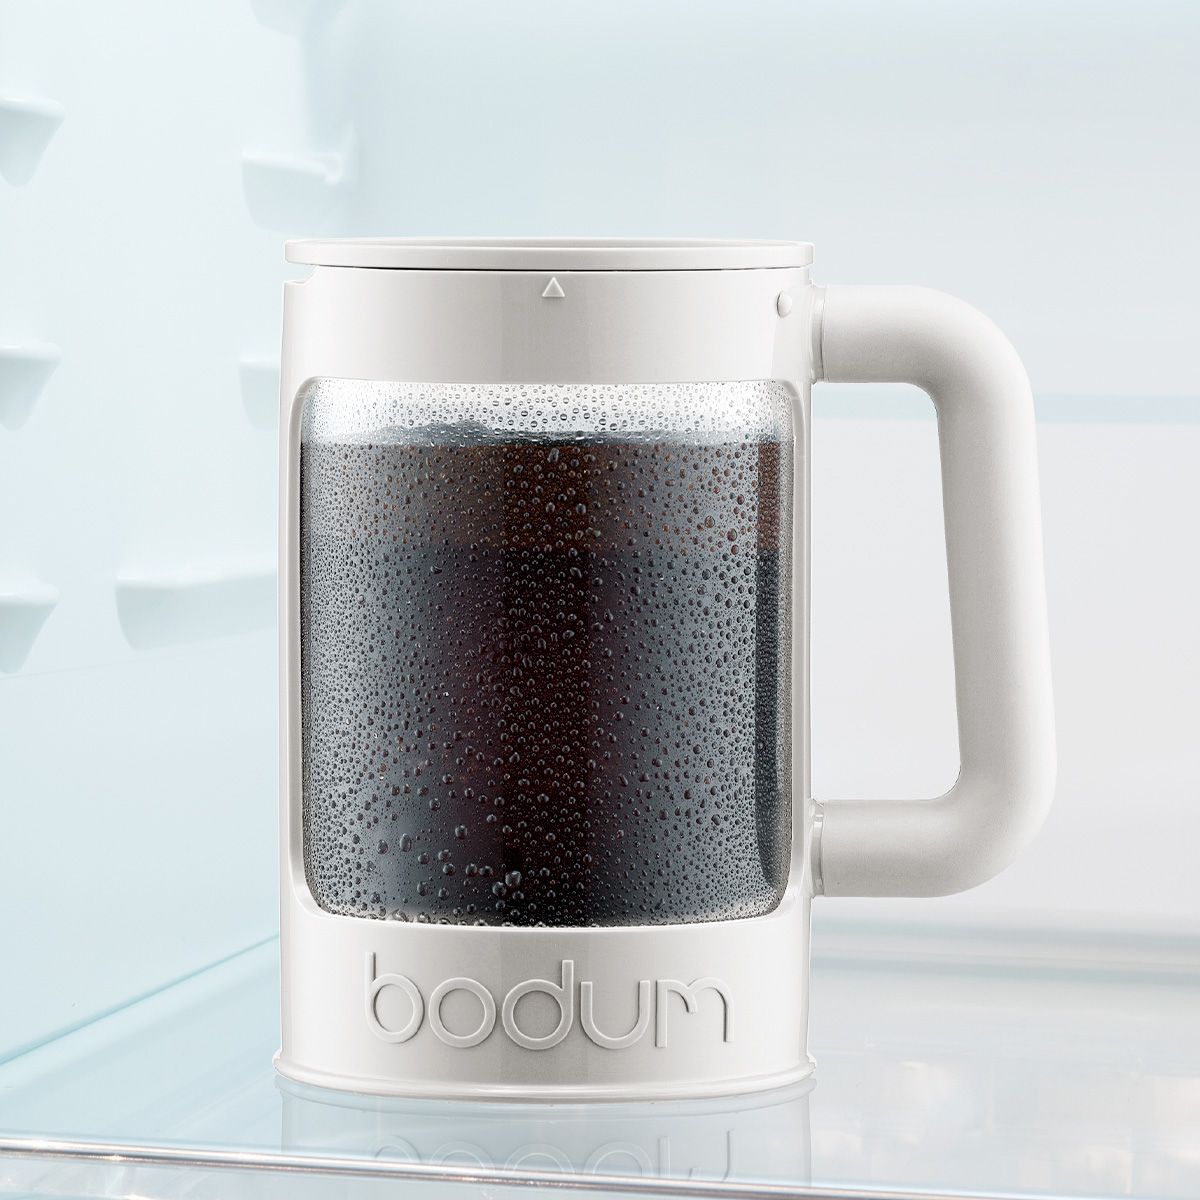 Bodum Bean Set Iced Coffee Brews med extra lockvitt, 12 kopp